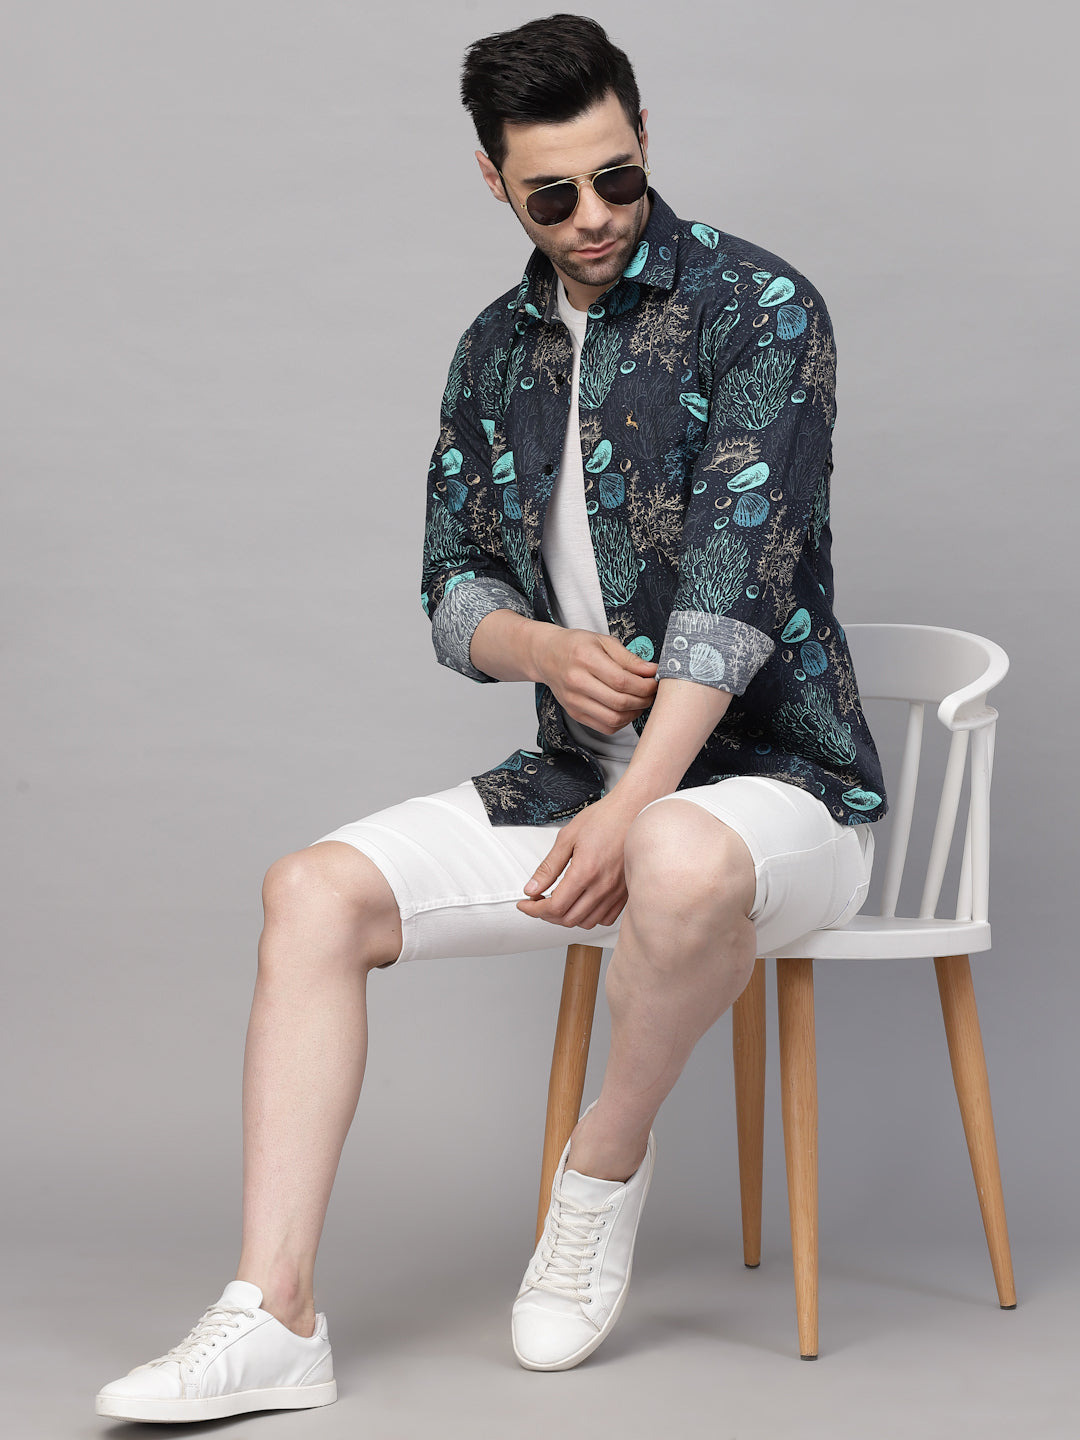 Valbone Men’s Digital Print Sea Plant Printed Regular Fit Casual Shirt Full Sleeves